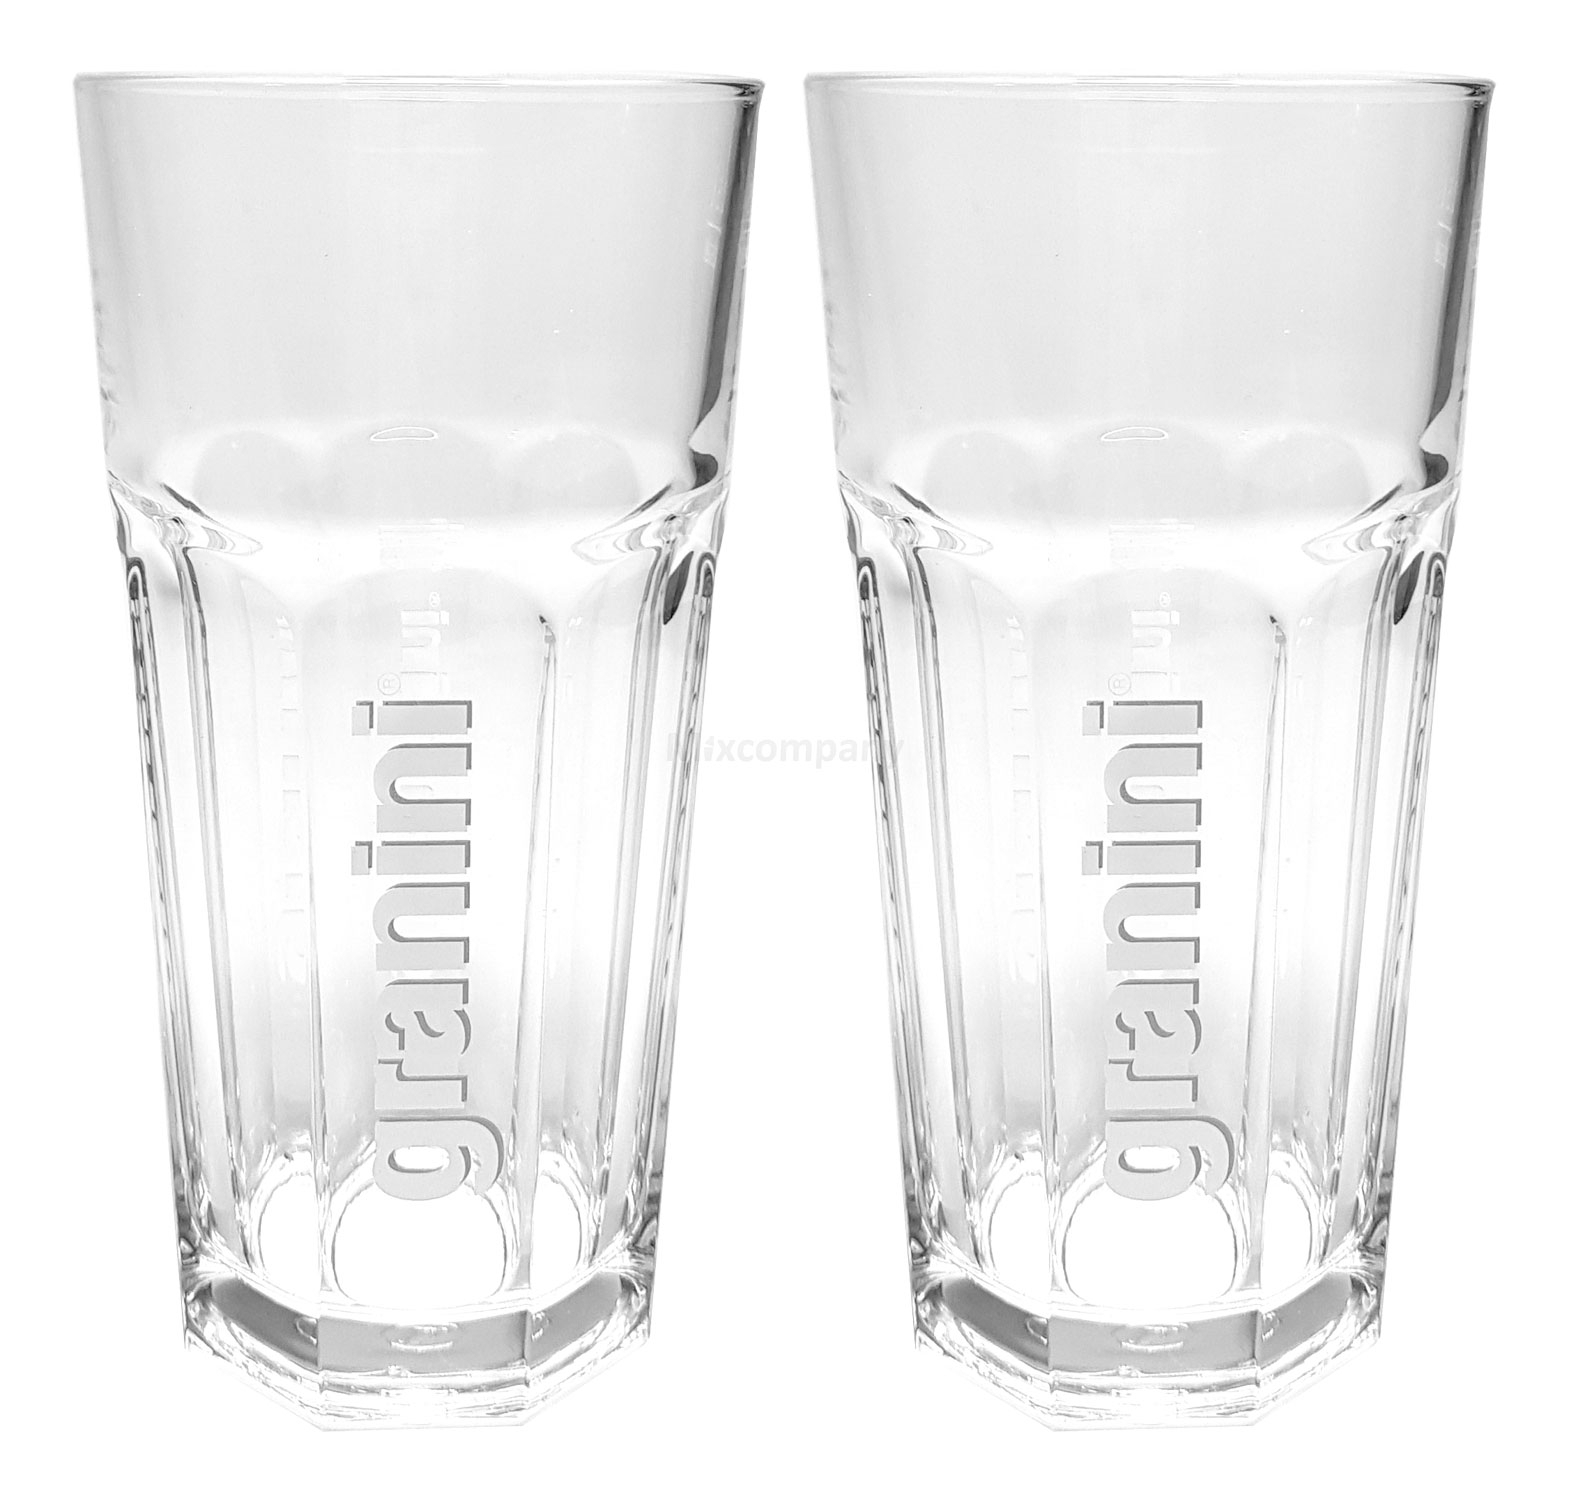 Granini Gläserset - 2x Gläser 0,3L